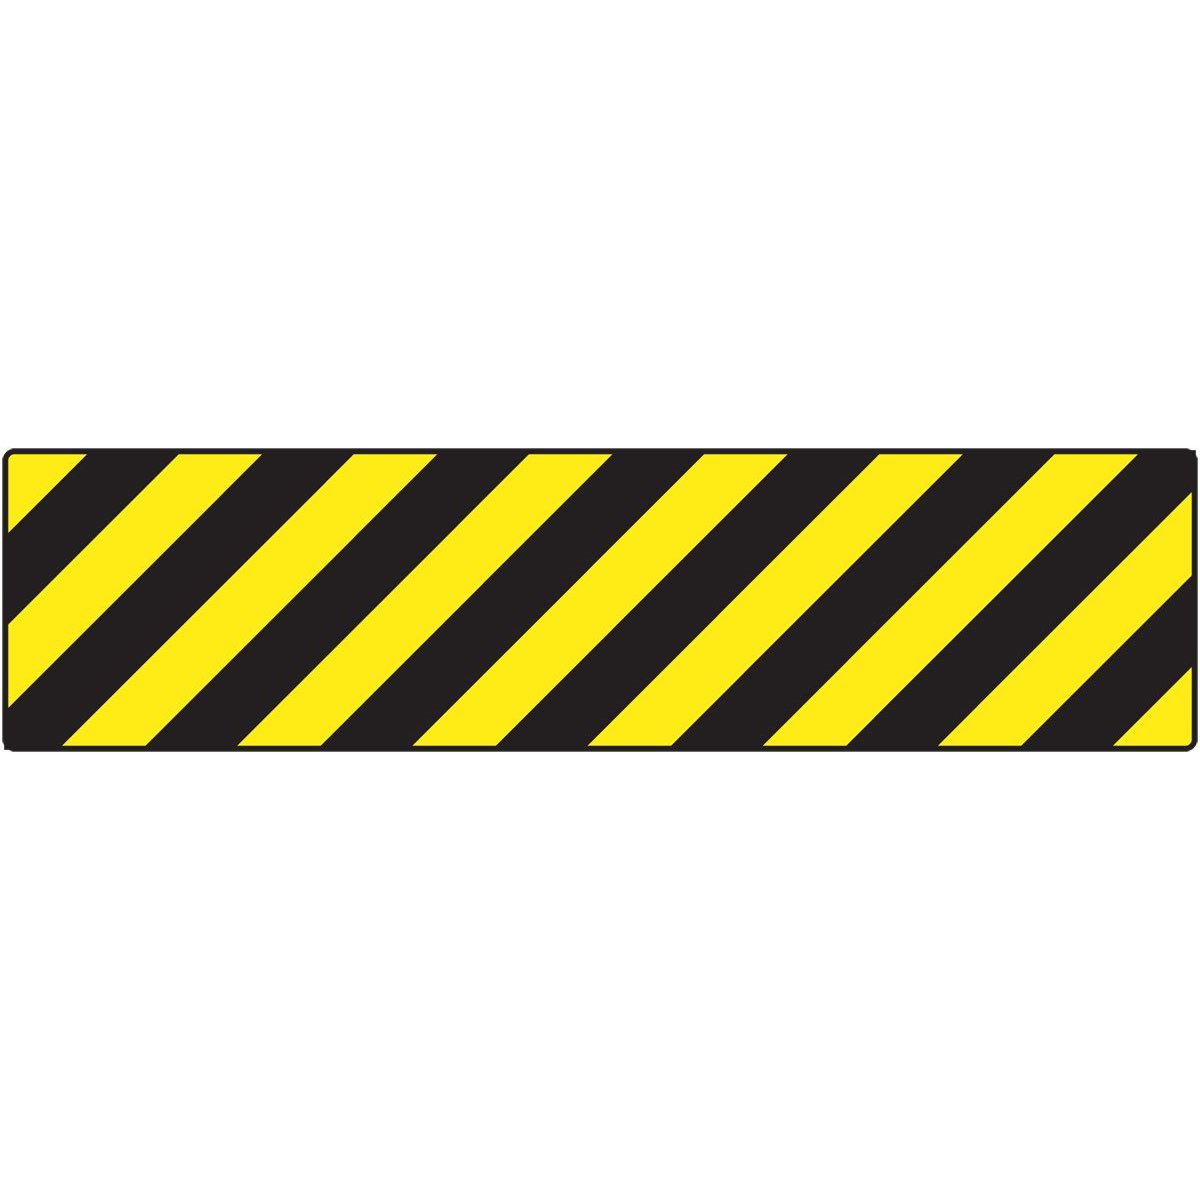  - Caution Tape Clip Art